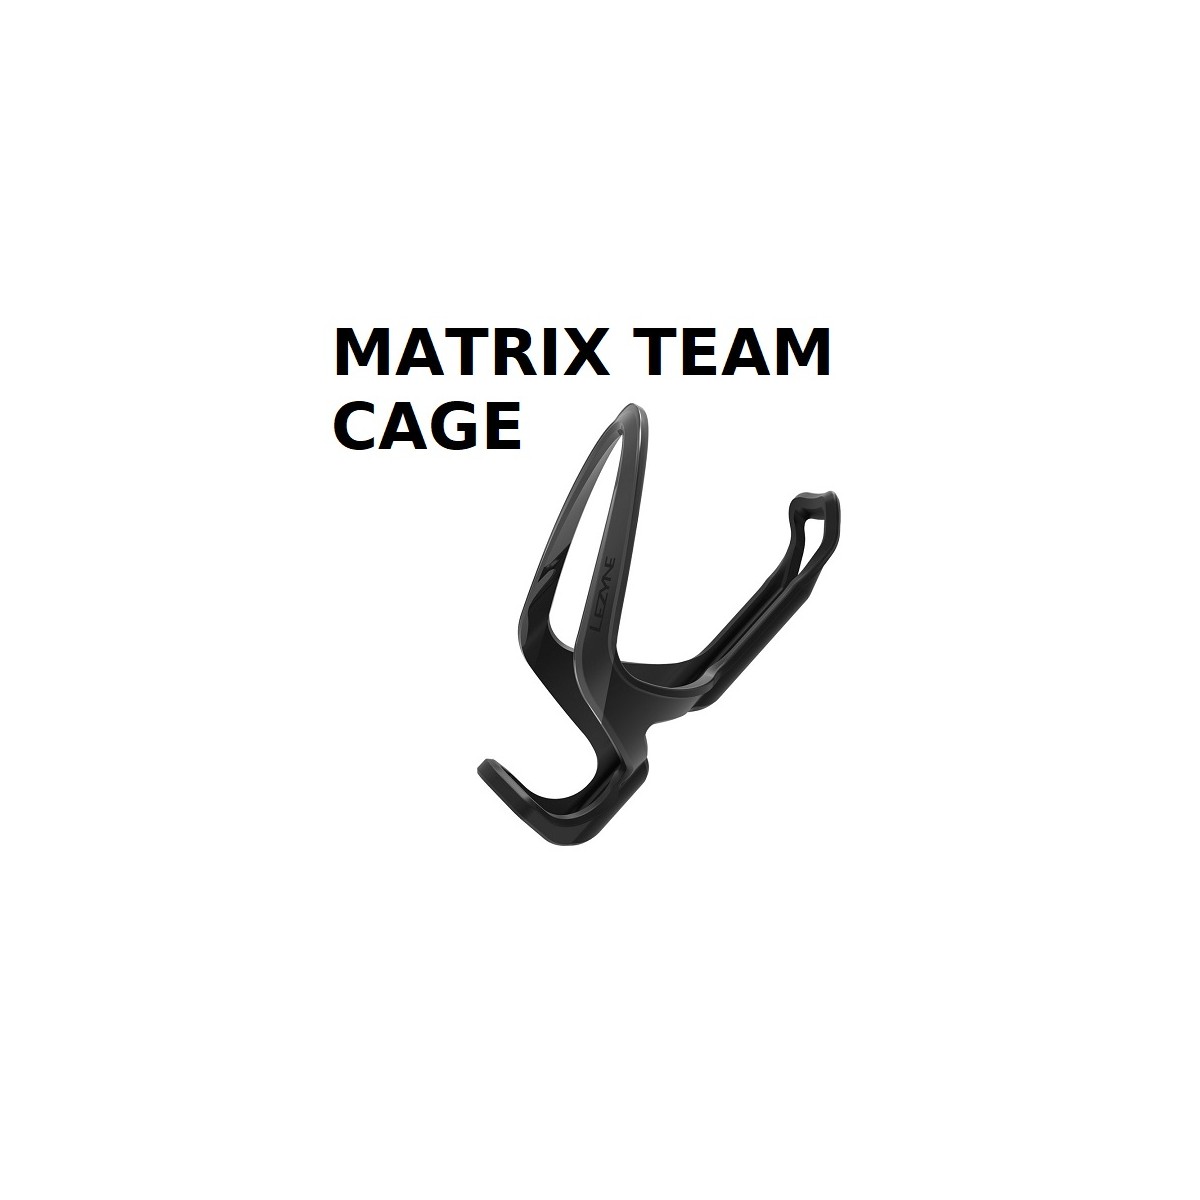 MATRIX TEAM CAGE